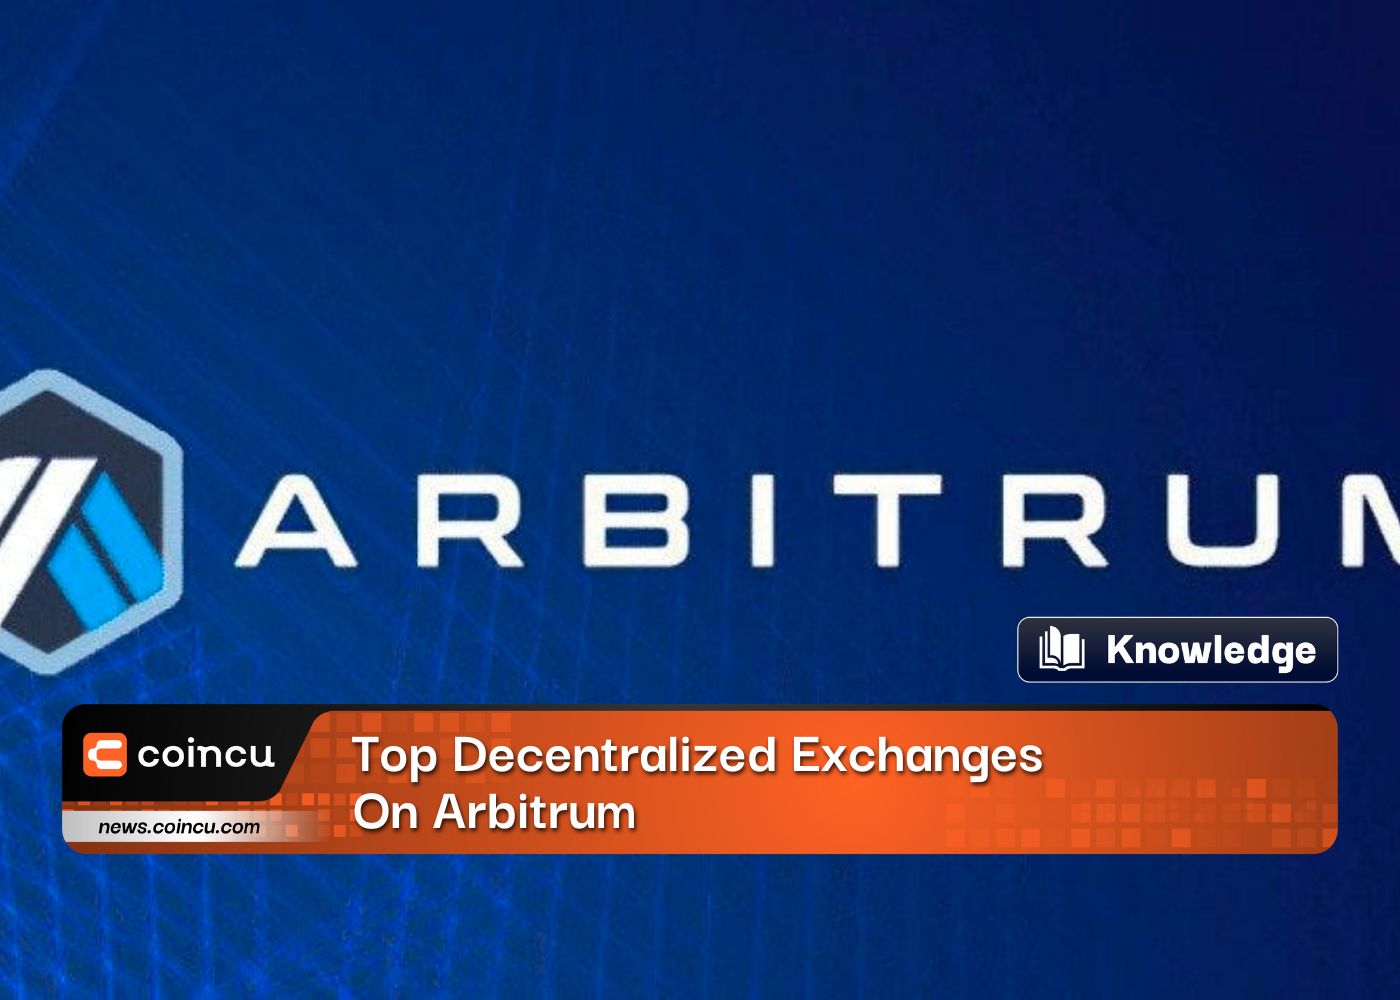 Top Decentralized Exchanges On Arbitrum